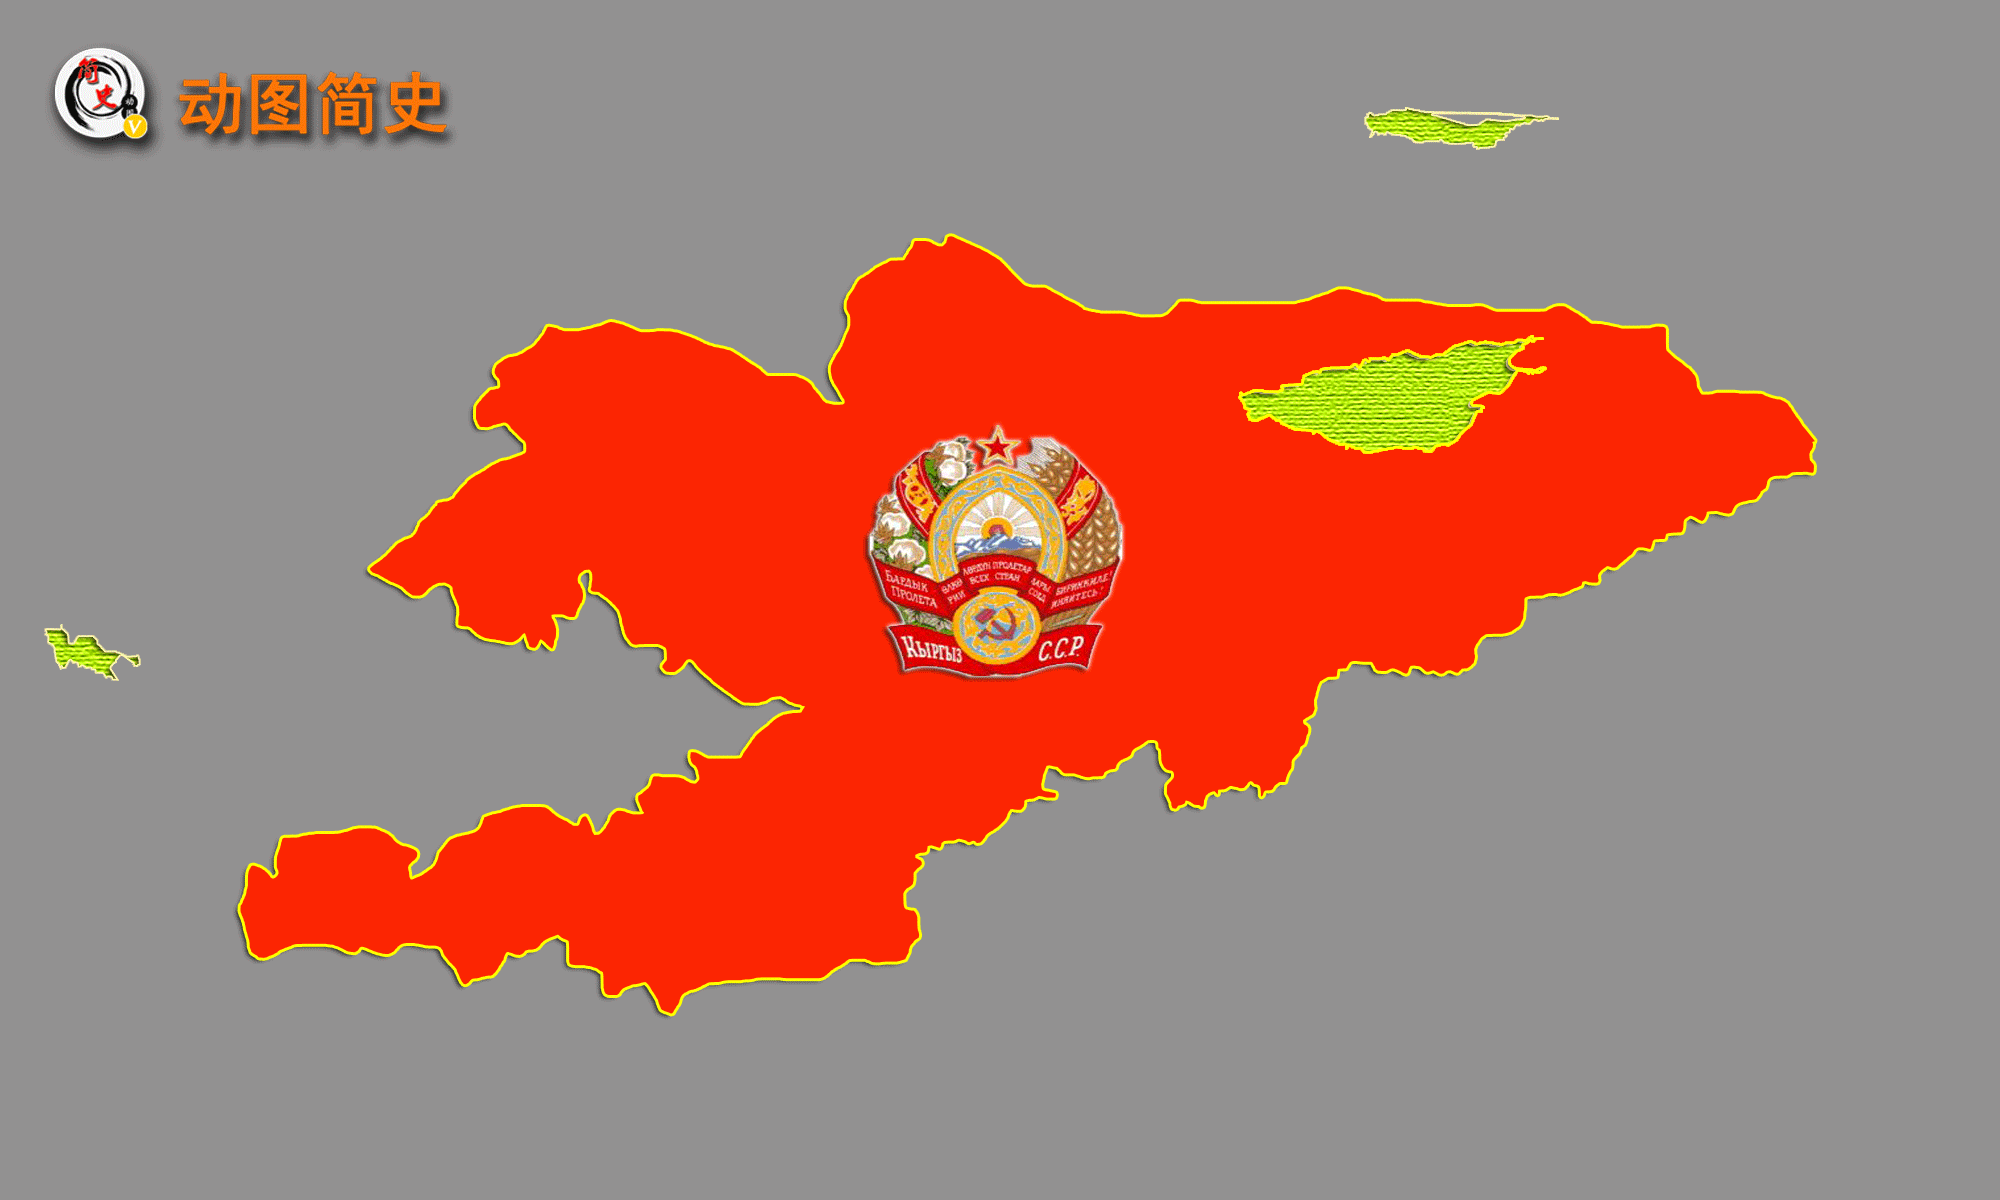 吉尔吉斯共和国,简称吉尔吉斯斯坦,中亚五国之一.